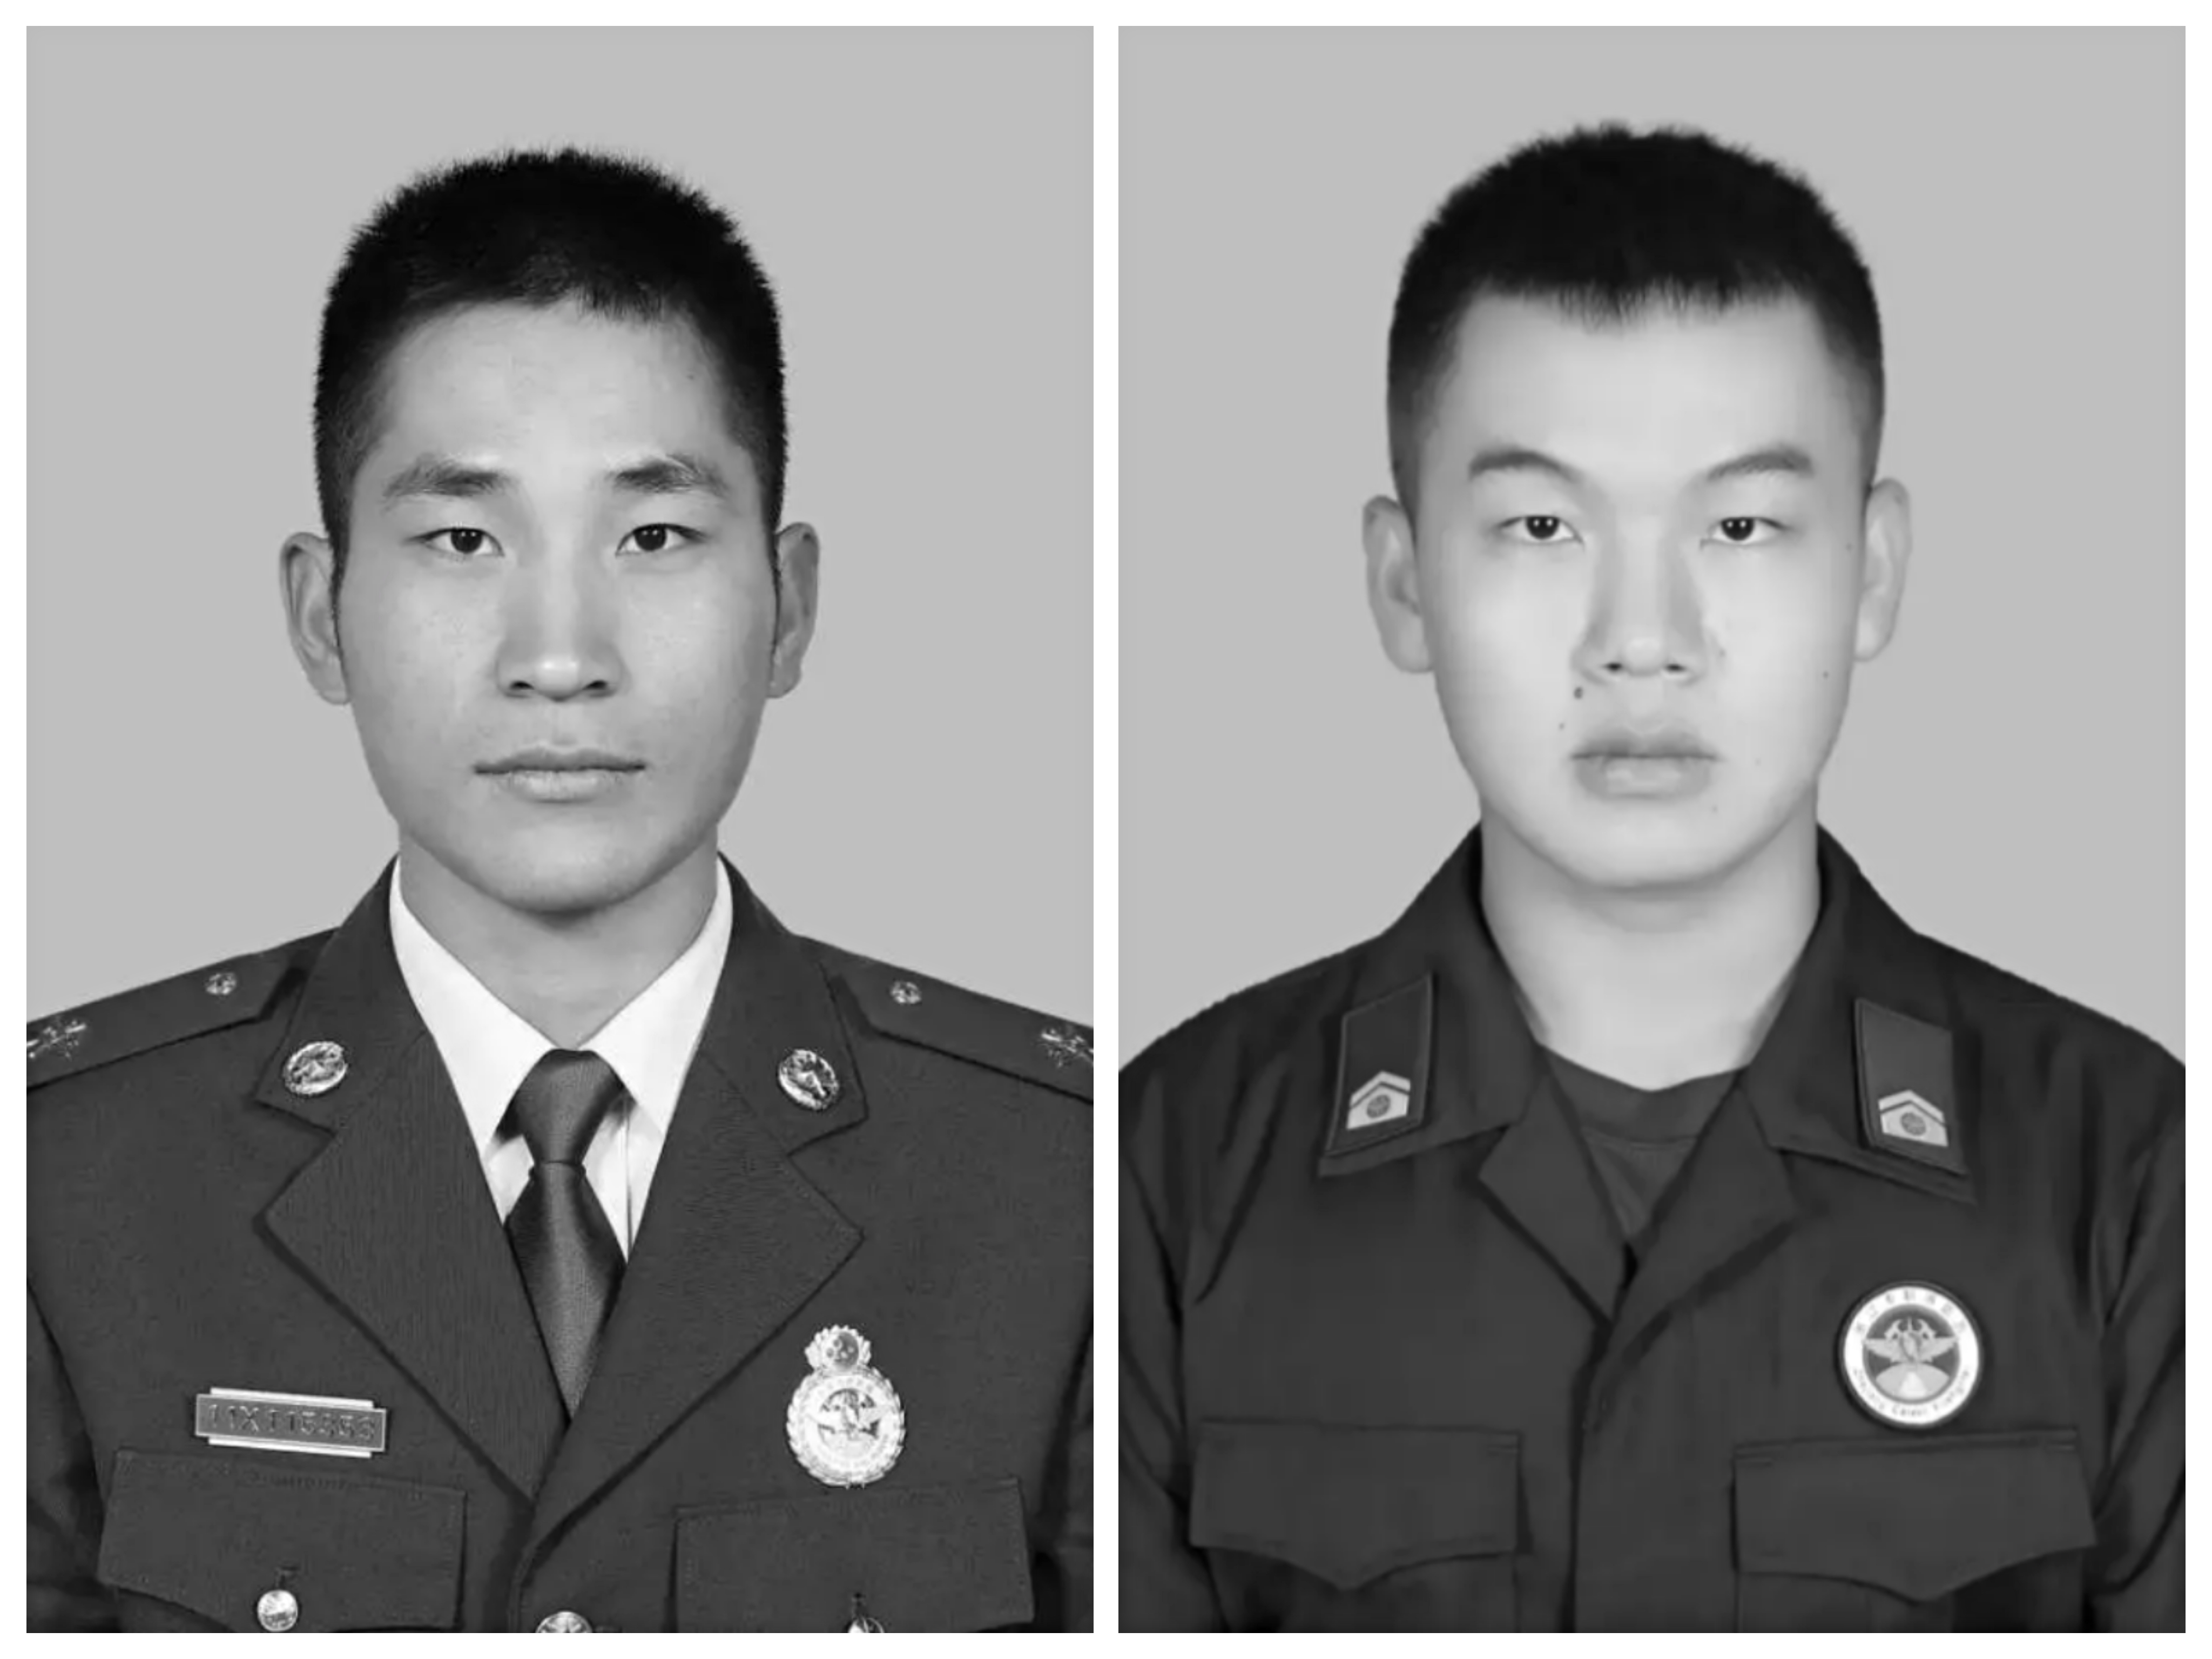 痛别,致敬英雄!消防员毛景荣、刘泽军同志被批准为烈士